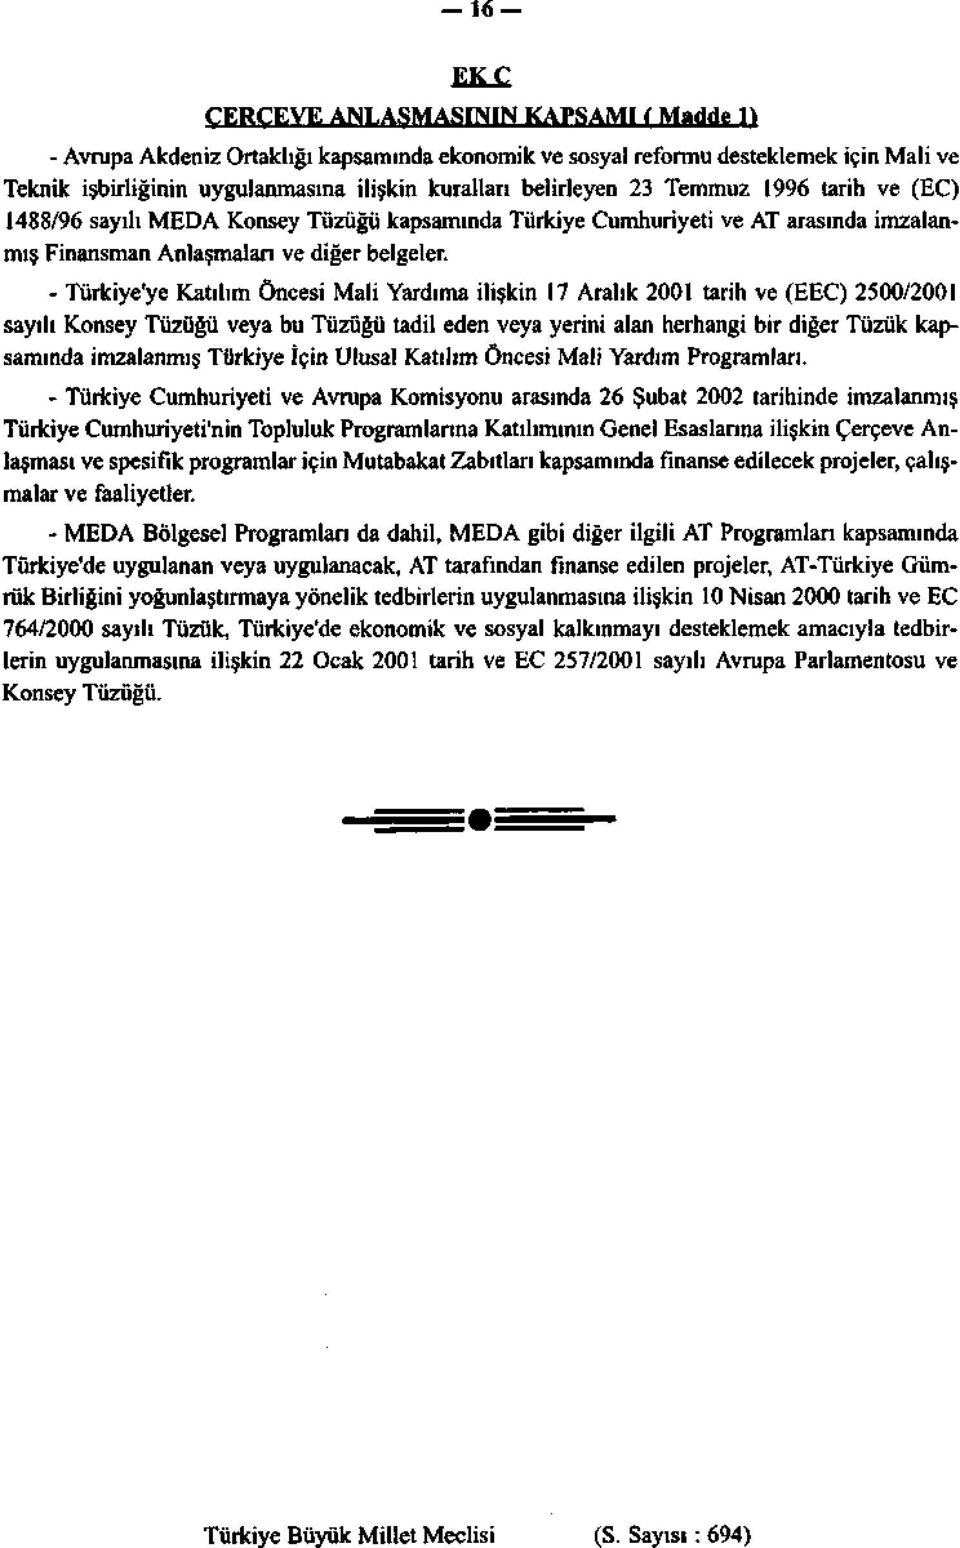 - Türkiye'ye Katılım Öncesi Mali Yardıma ilişkin 17 Aralık 2001 tarih ve (EEC) 2500/2001 sayılı Konsey Tüzüğü veya bu Tüzüğü tadil eden veya yerini alan herhangi bir diğer Tüzük kapsamında imzalanmış